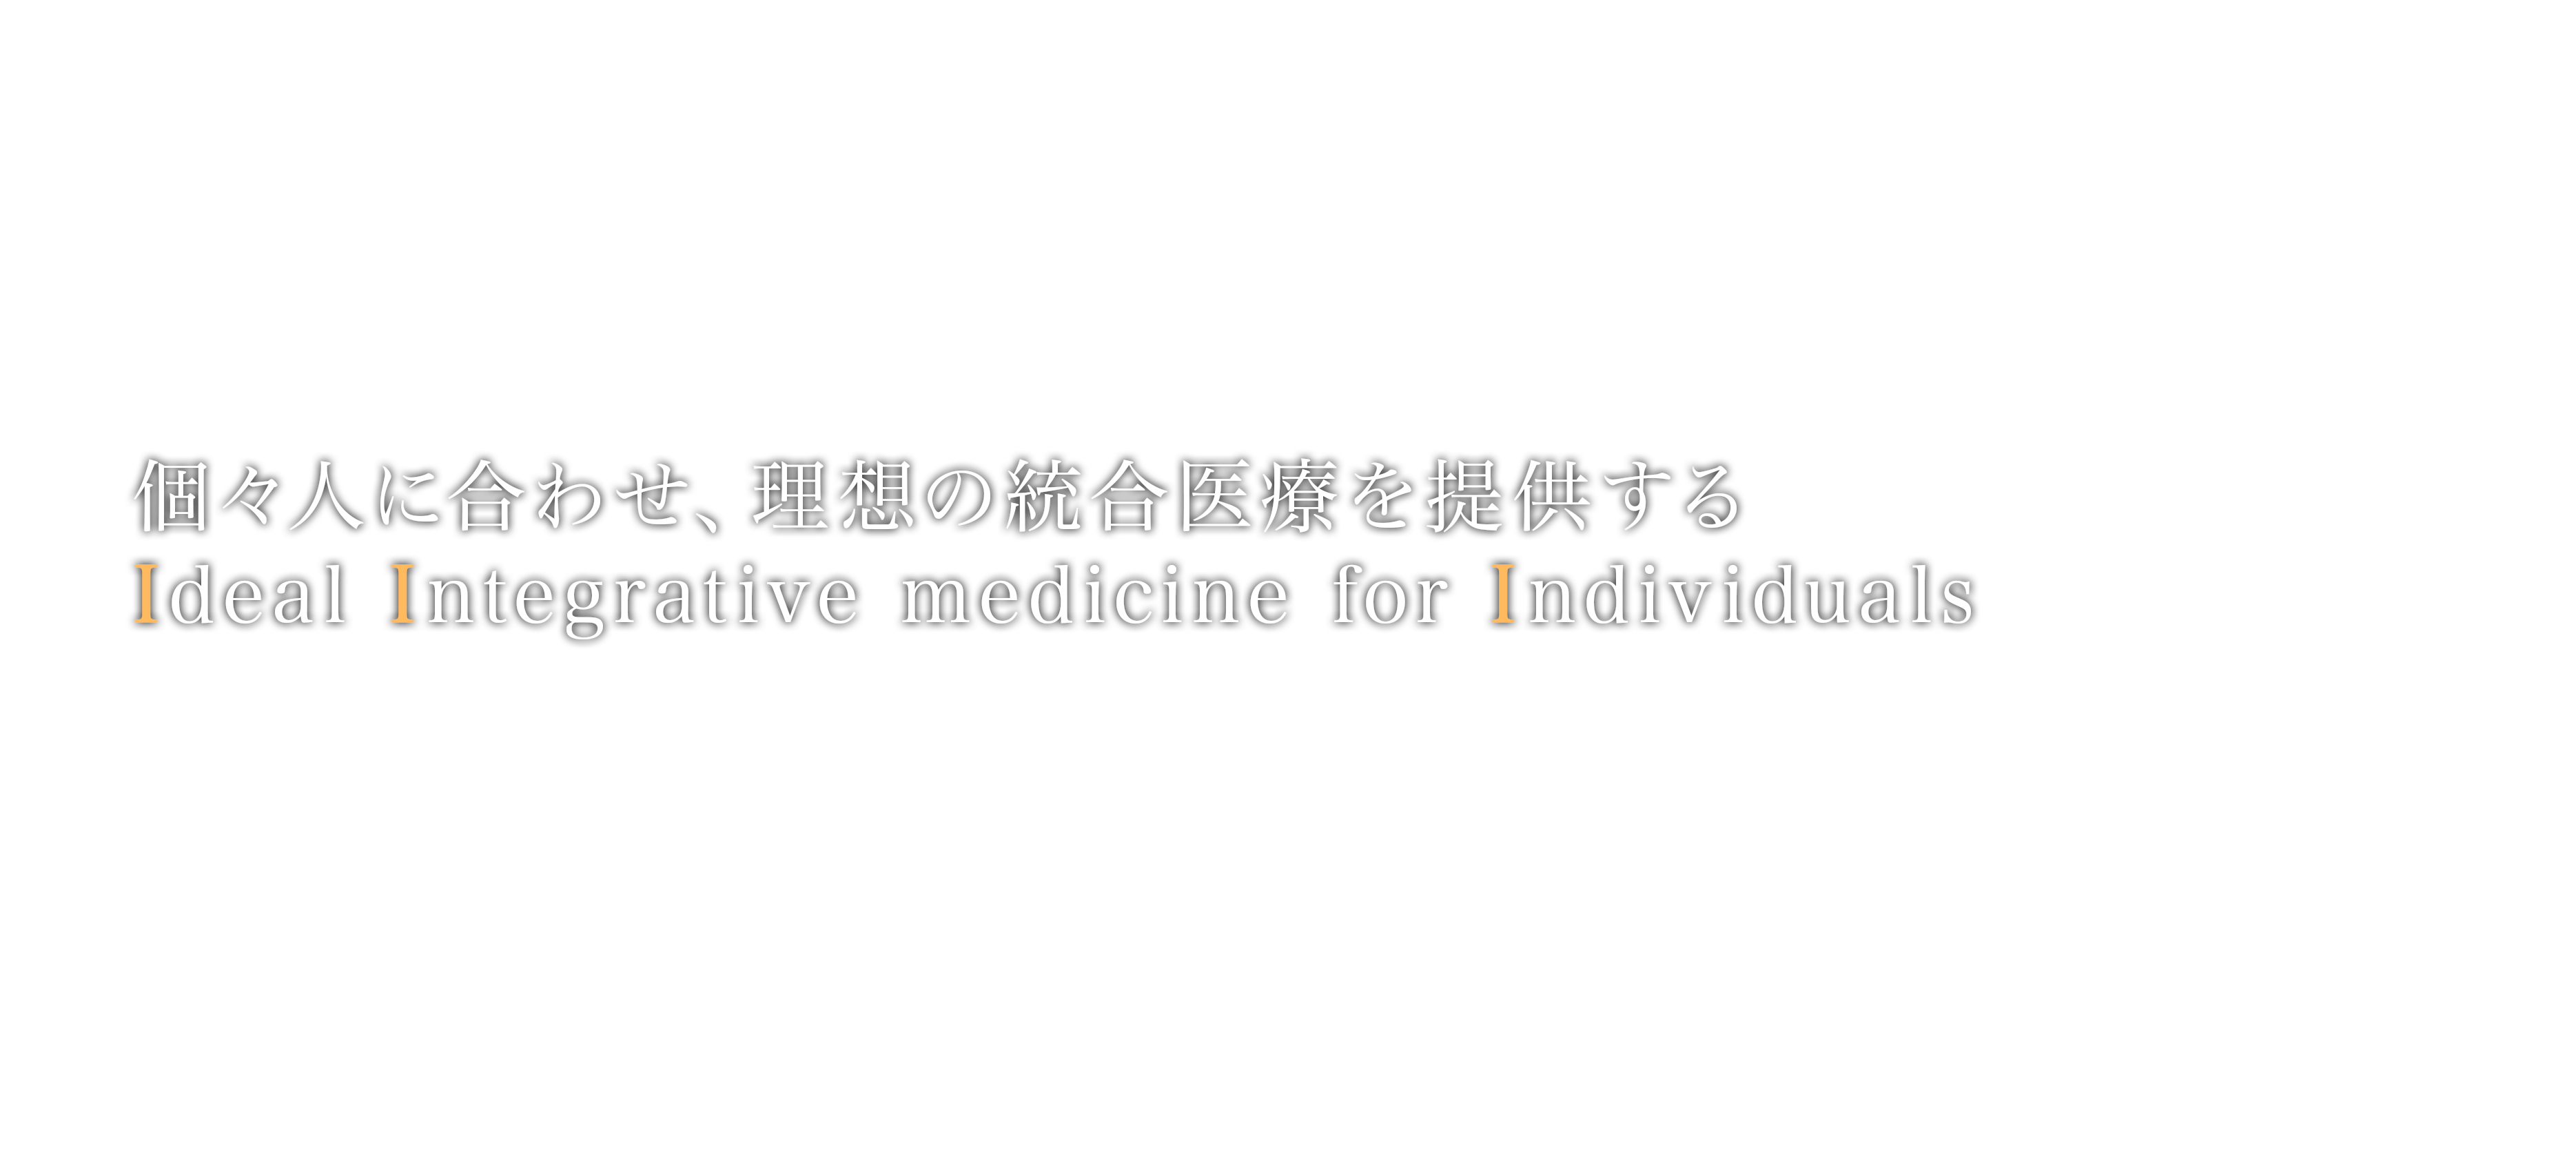 個々人に合わせ、理想の統合医療を提供する Providing ideal integrative medicine for individuals